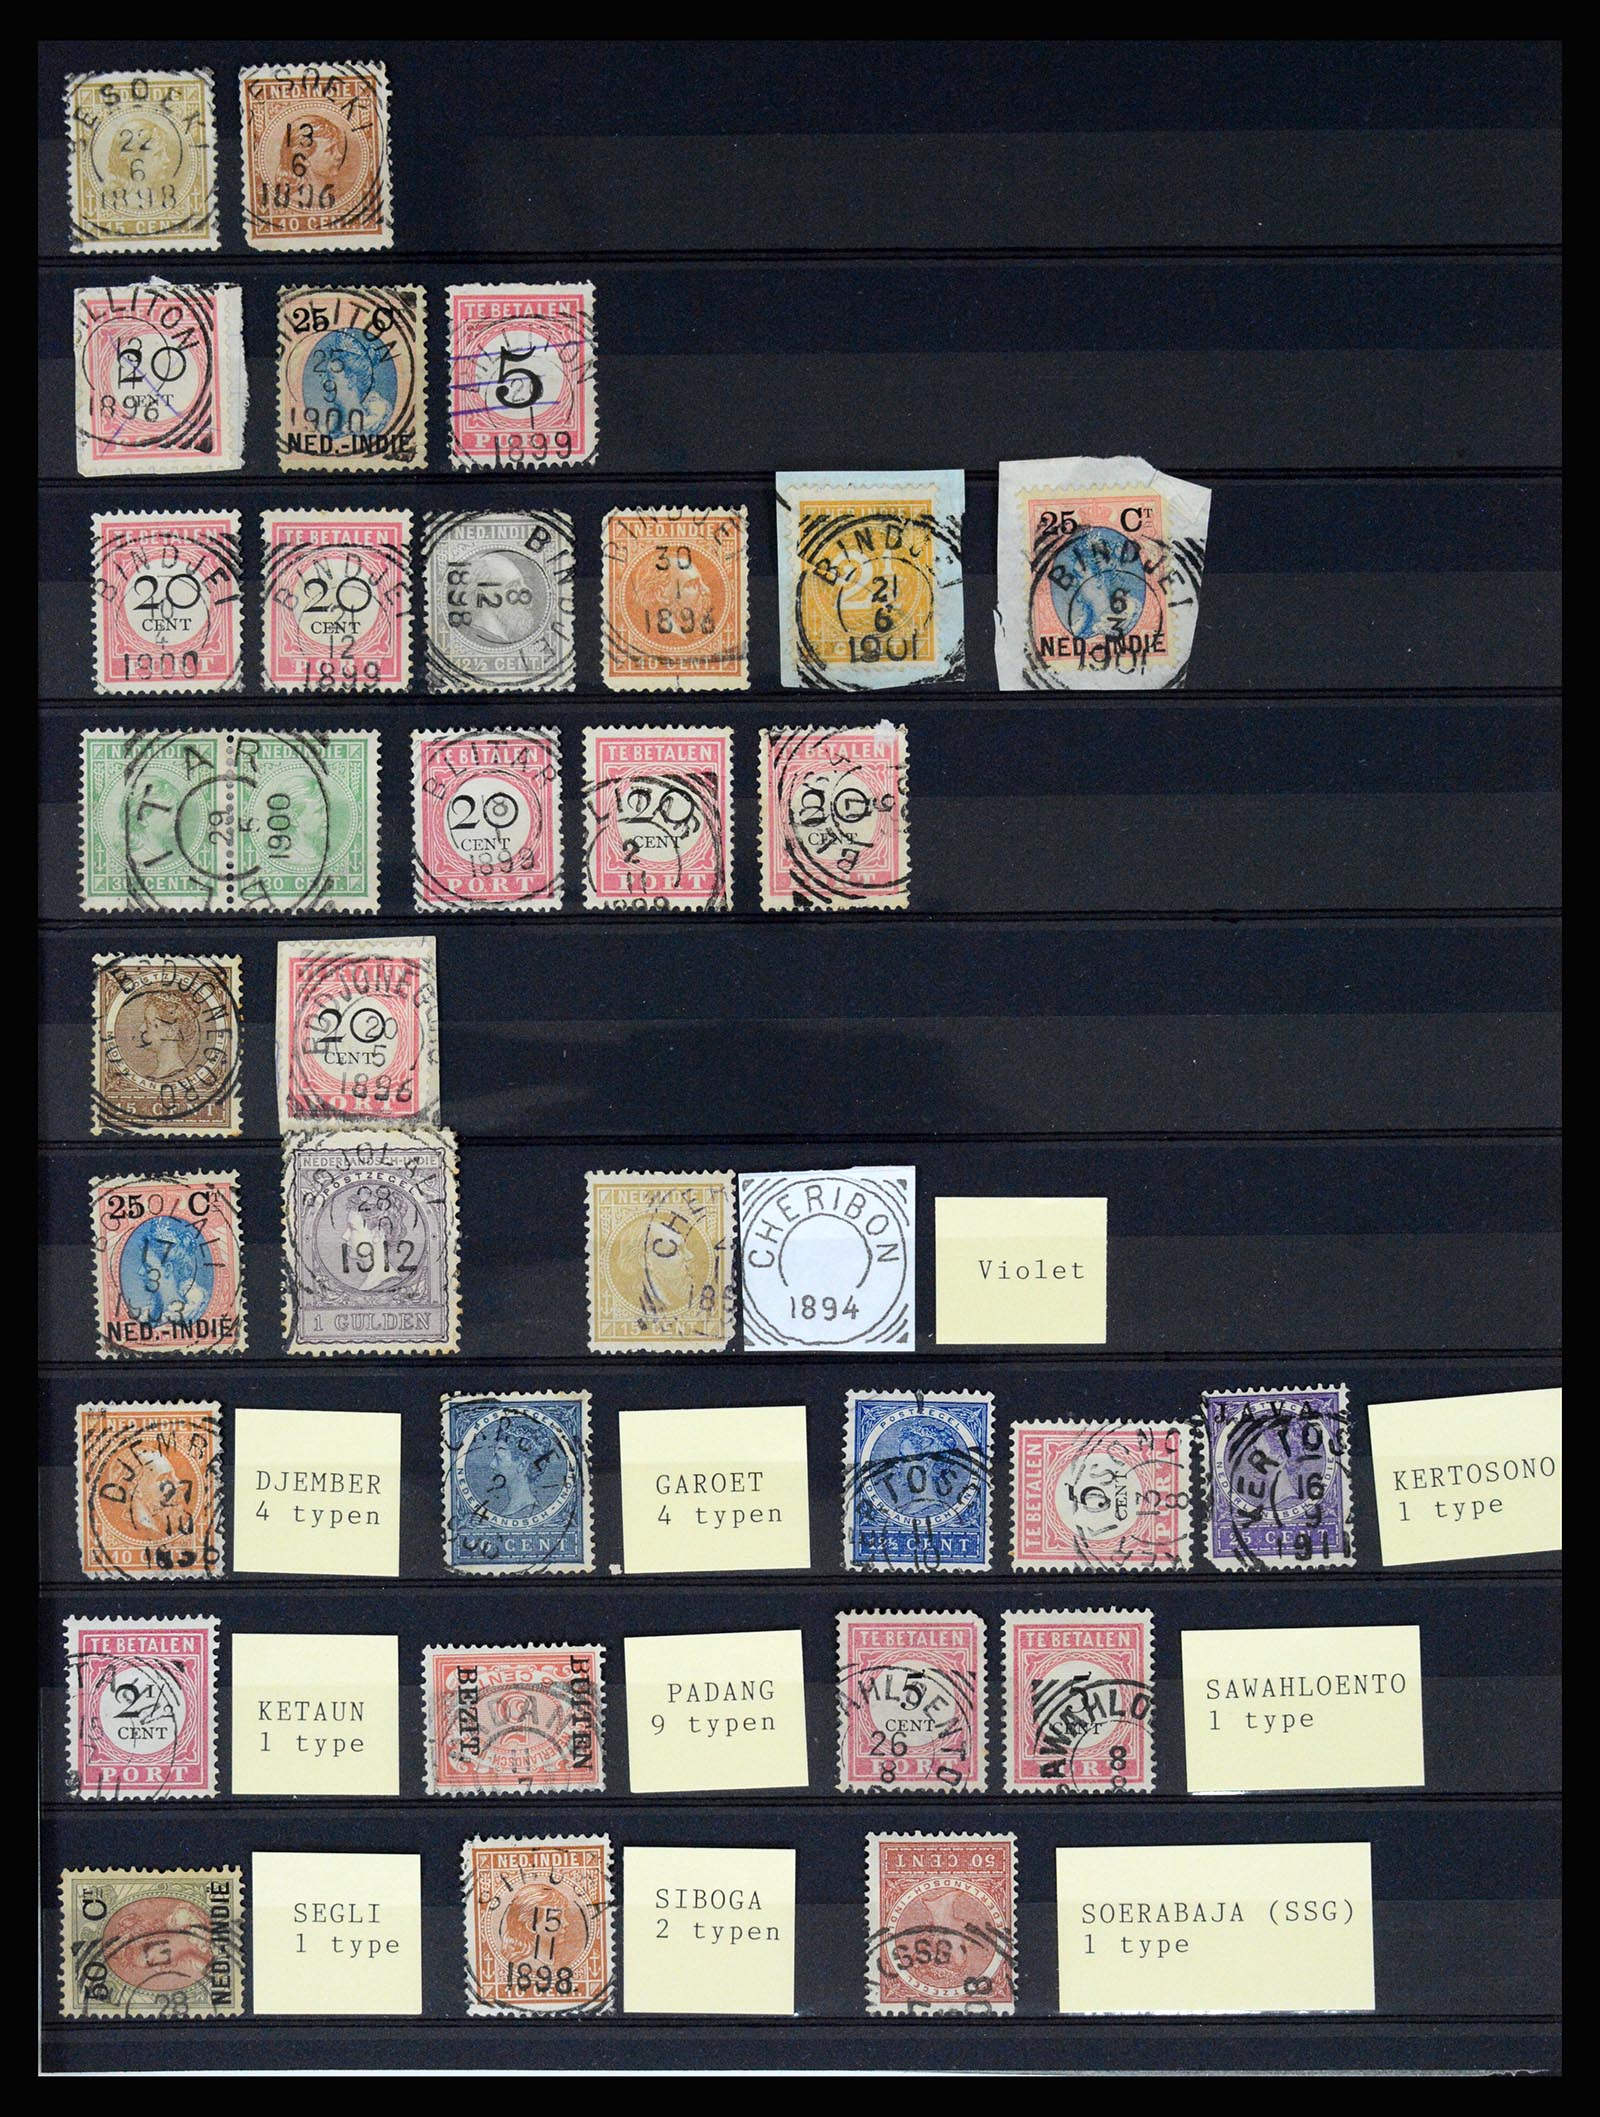 36512 081 - Stamp collection 36512 Nederlands Indië stempels 1872-1930.